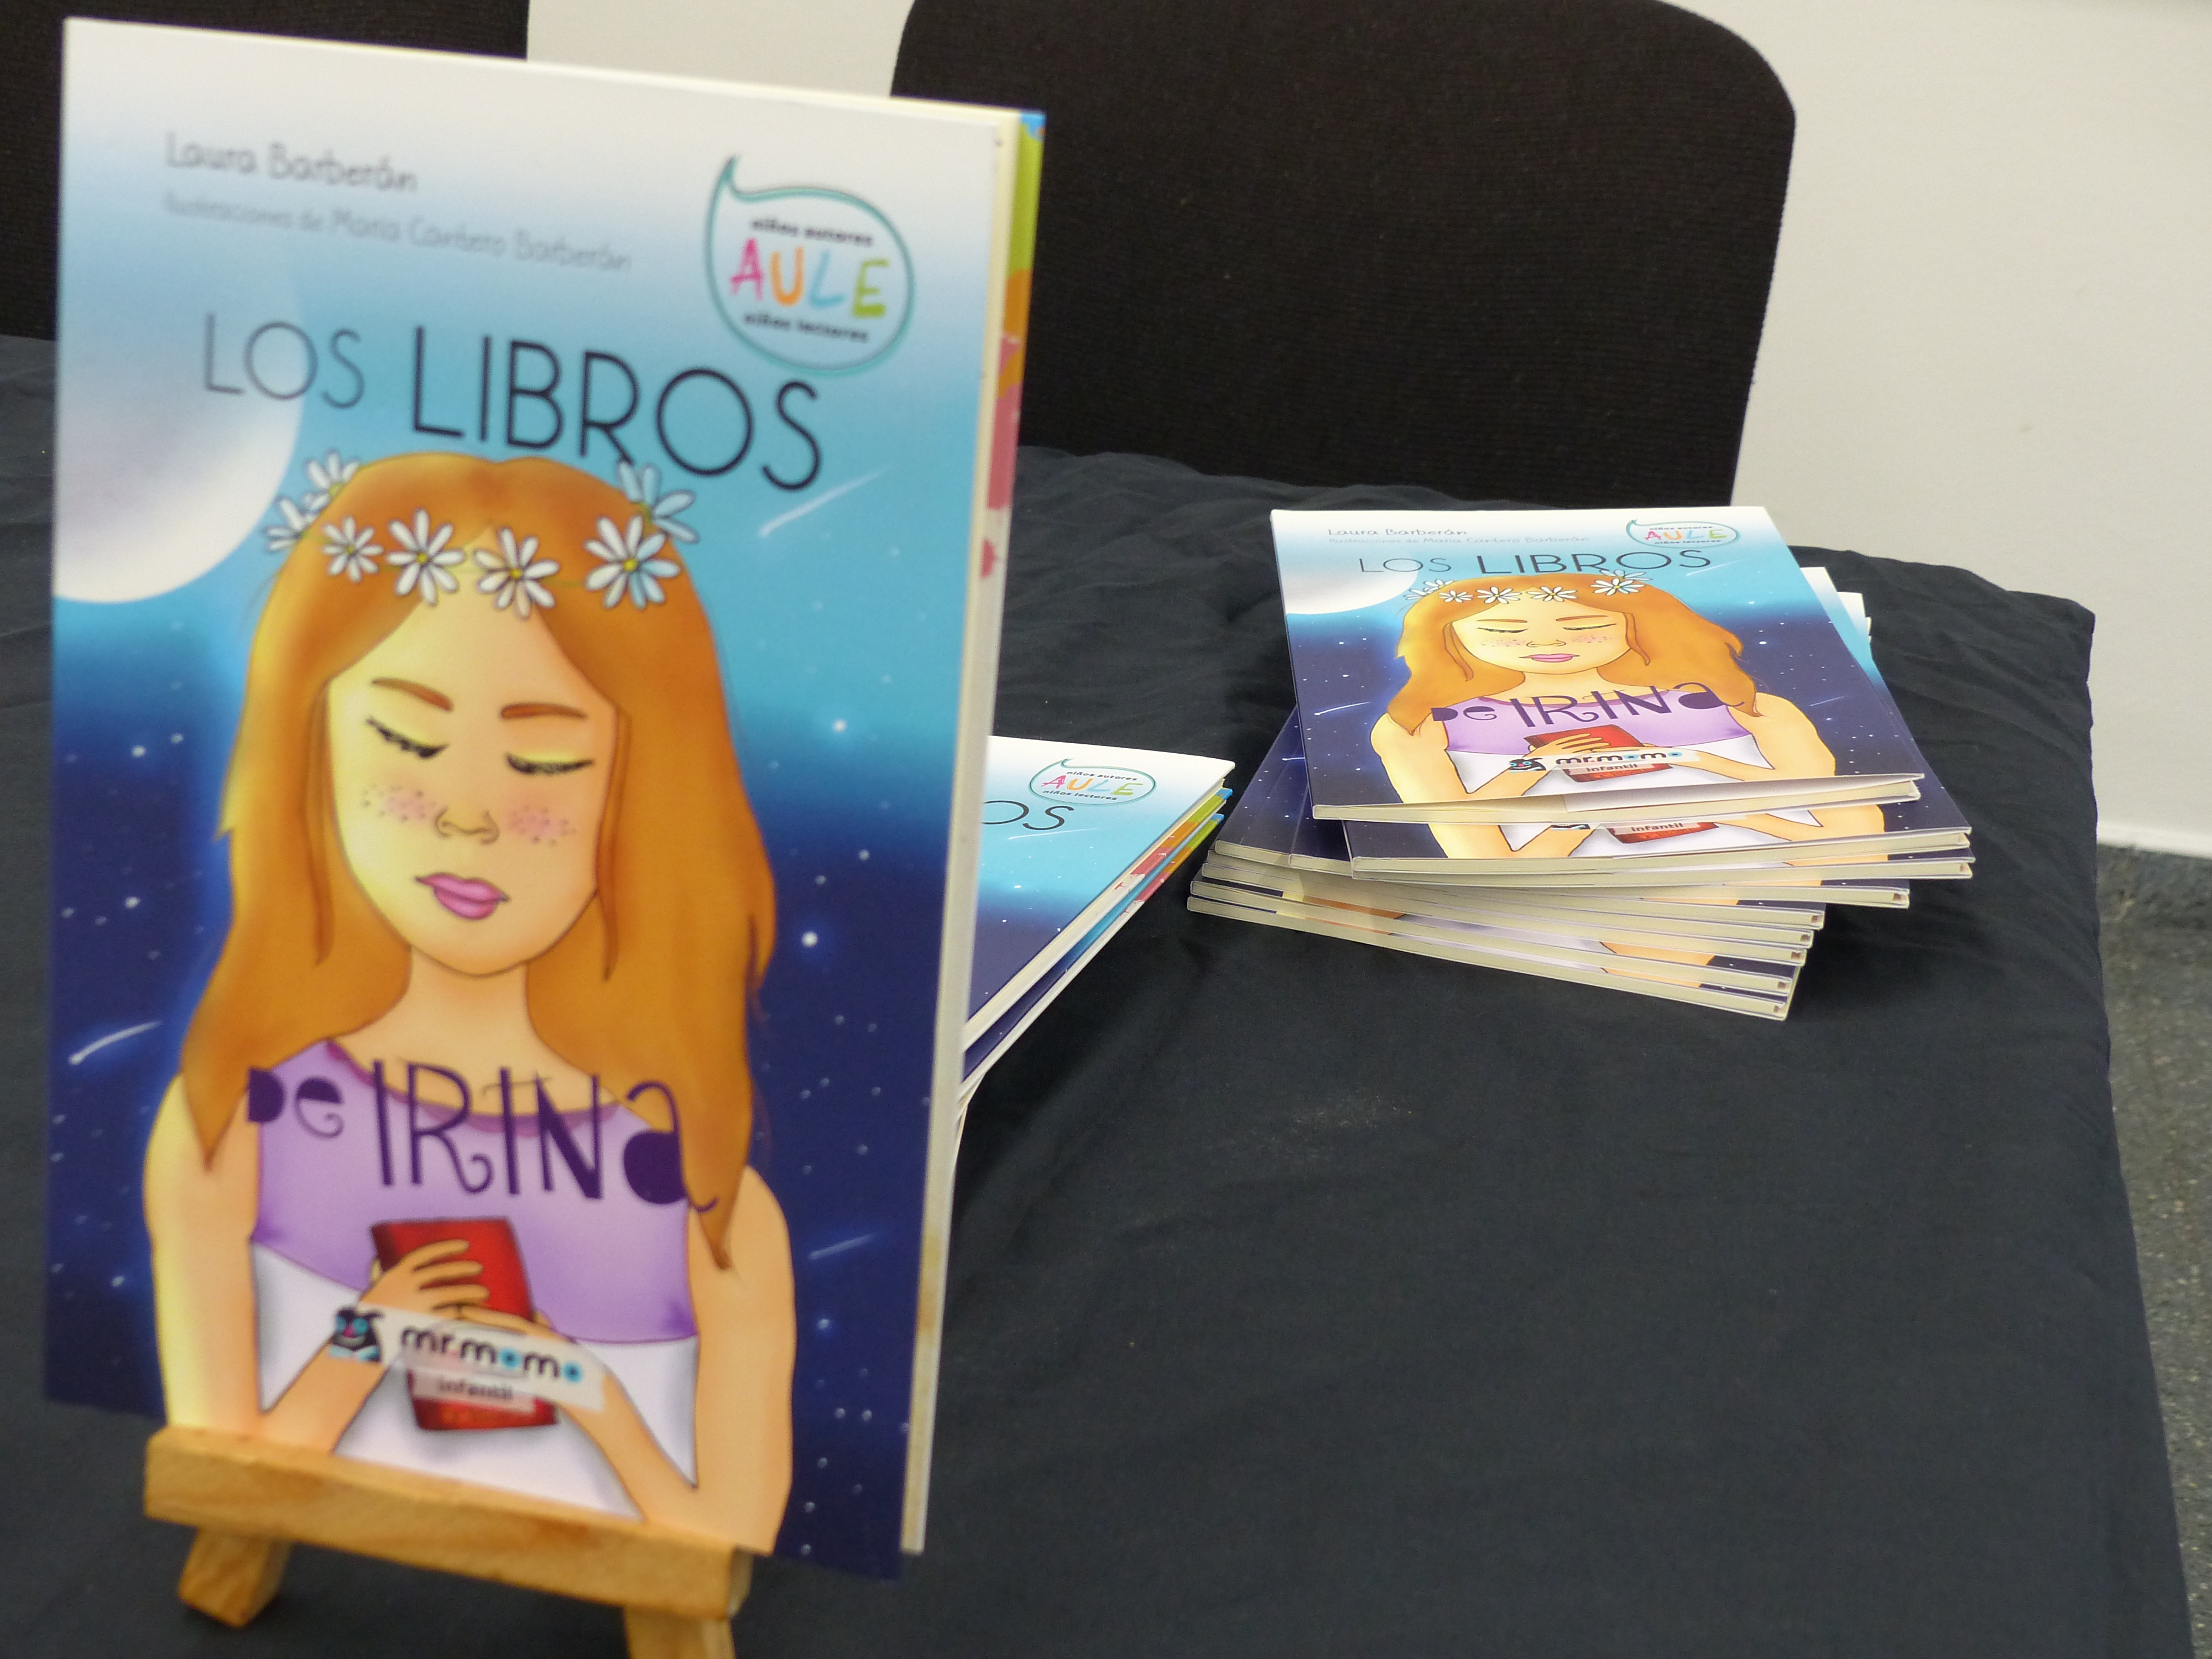 Laura Barberán, persona usuària dels serveis d’ACAPPS, publica el seu primer llibre “Los Libros de Irina”